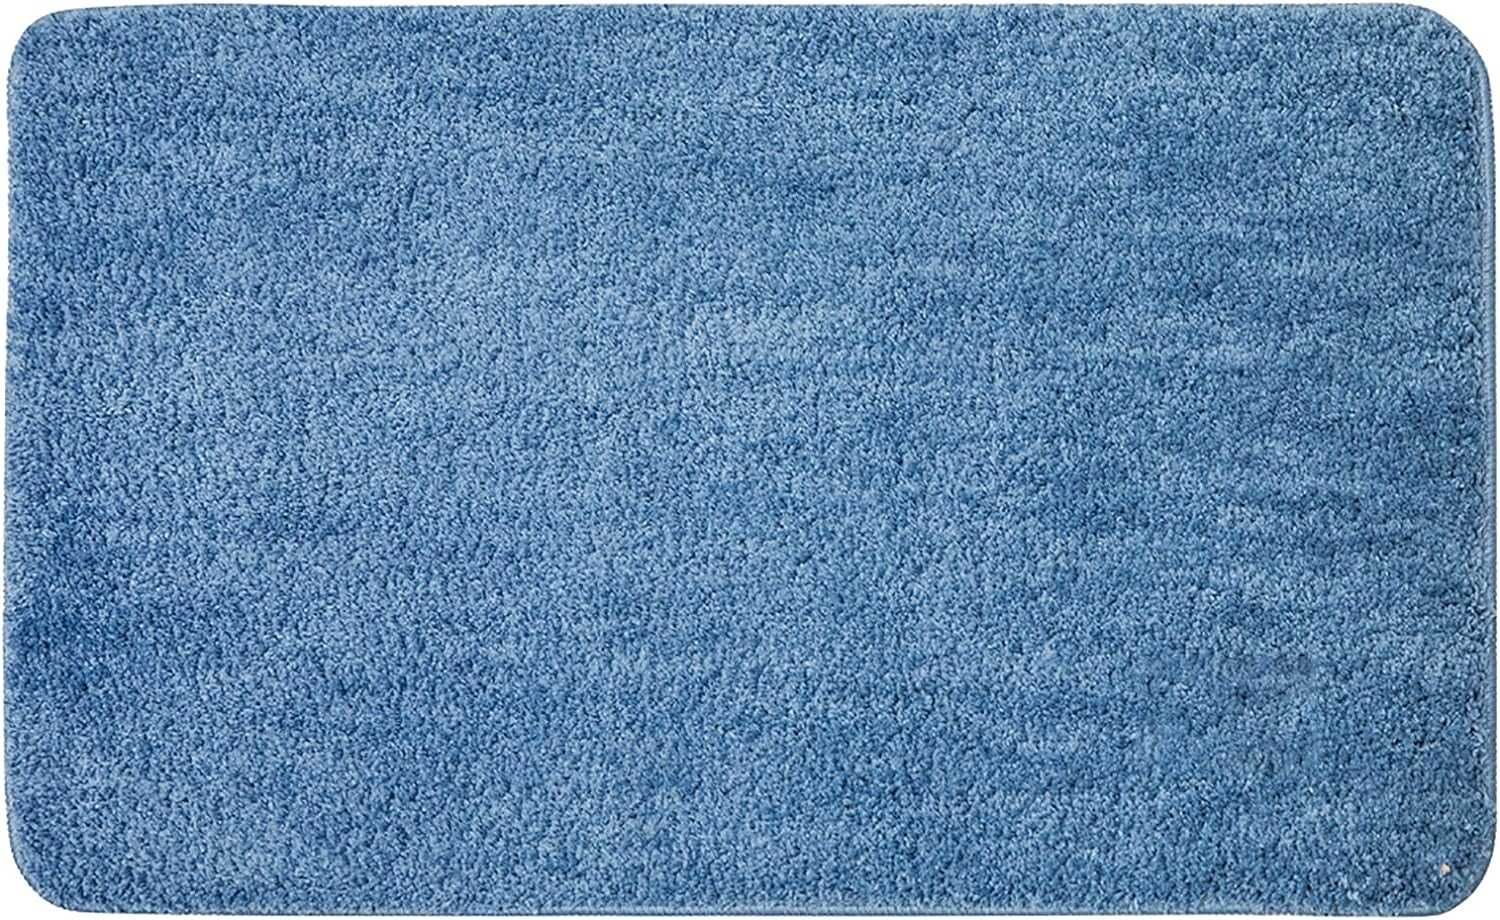 Nowy dywanik łazienkowy / dywan / mata / 50x80cm / niebieski !1436!